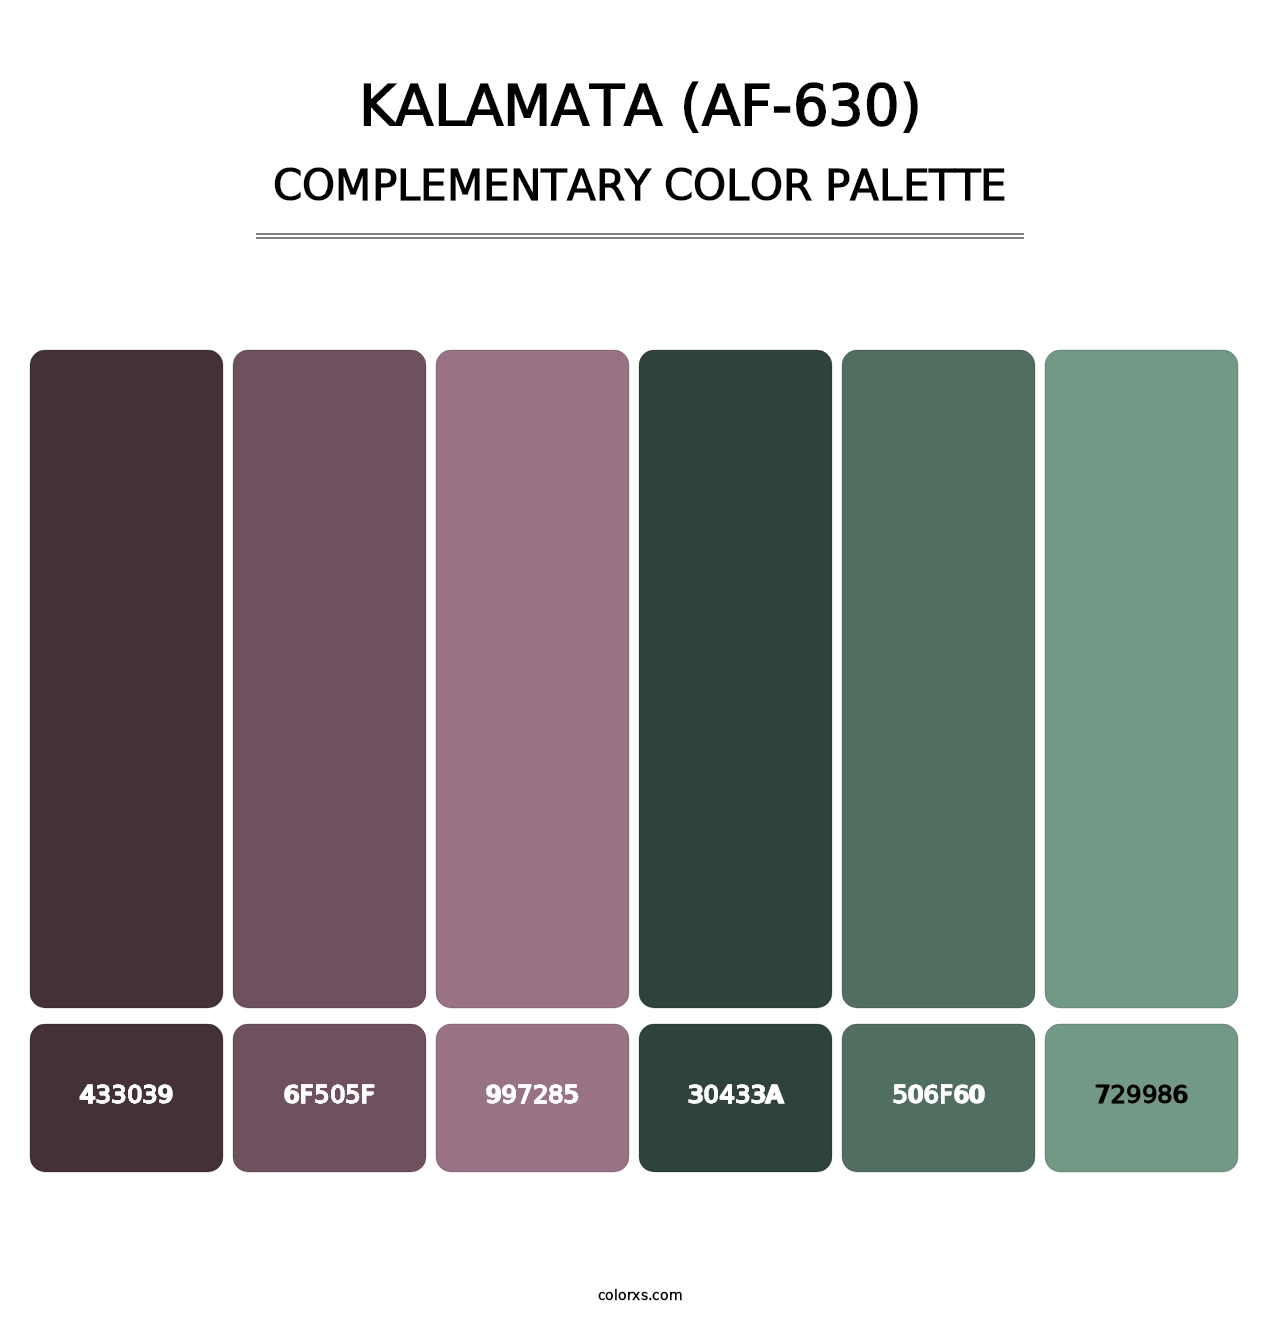 Kalamata (AF-630) - Complementary Color Palette